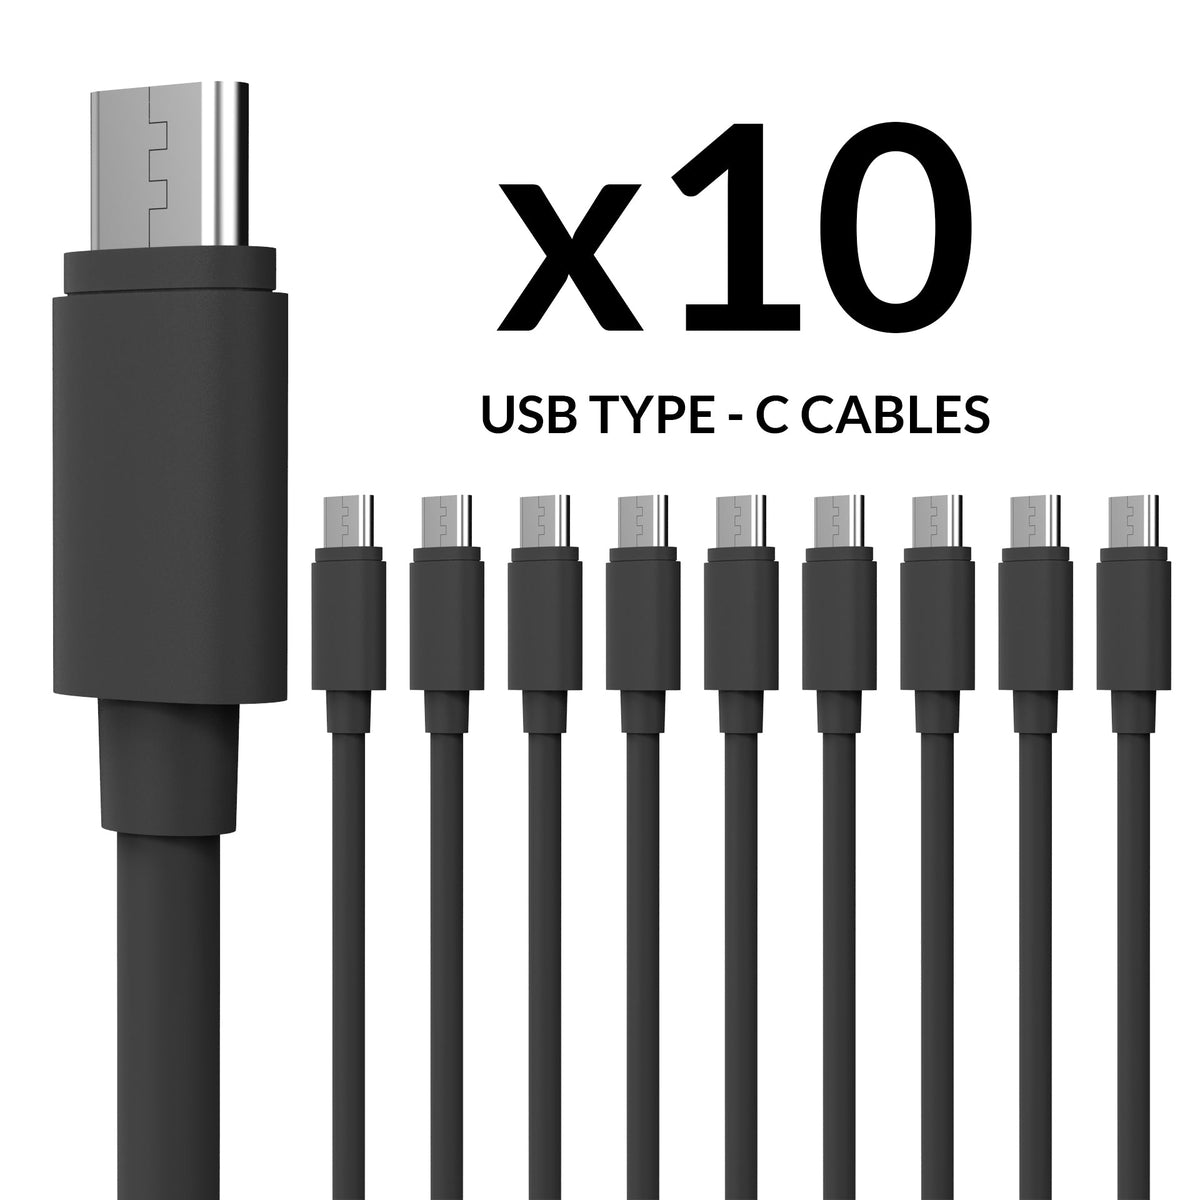 Cable Bundles - Type C